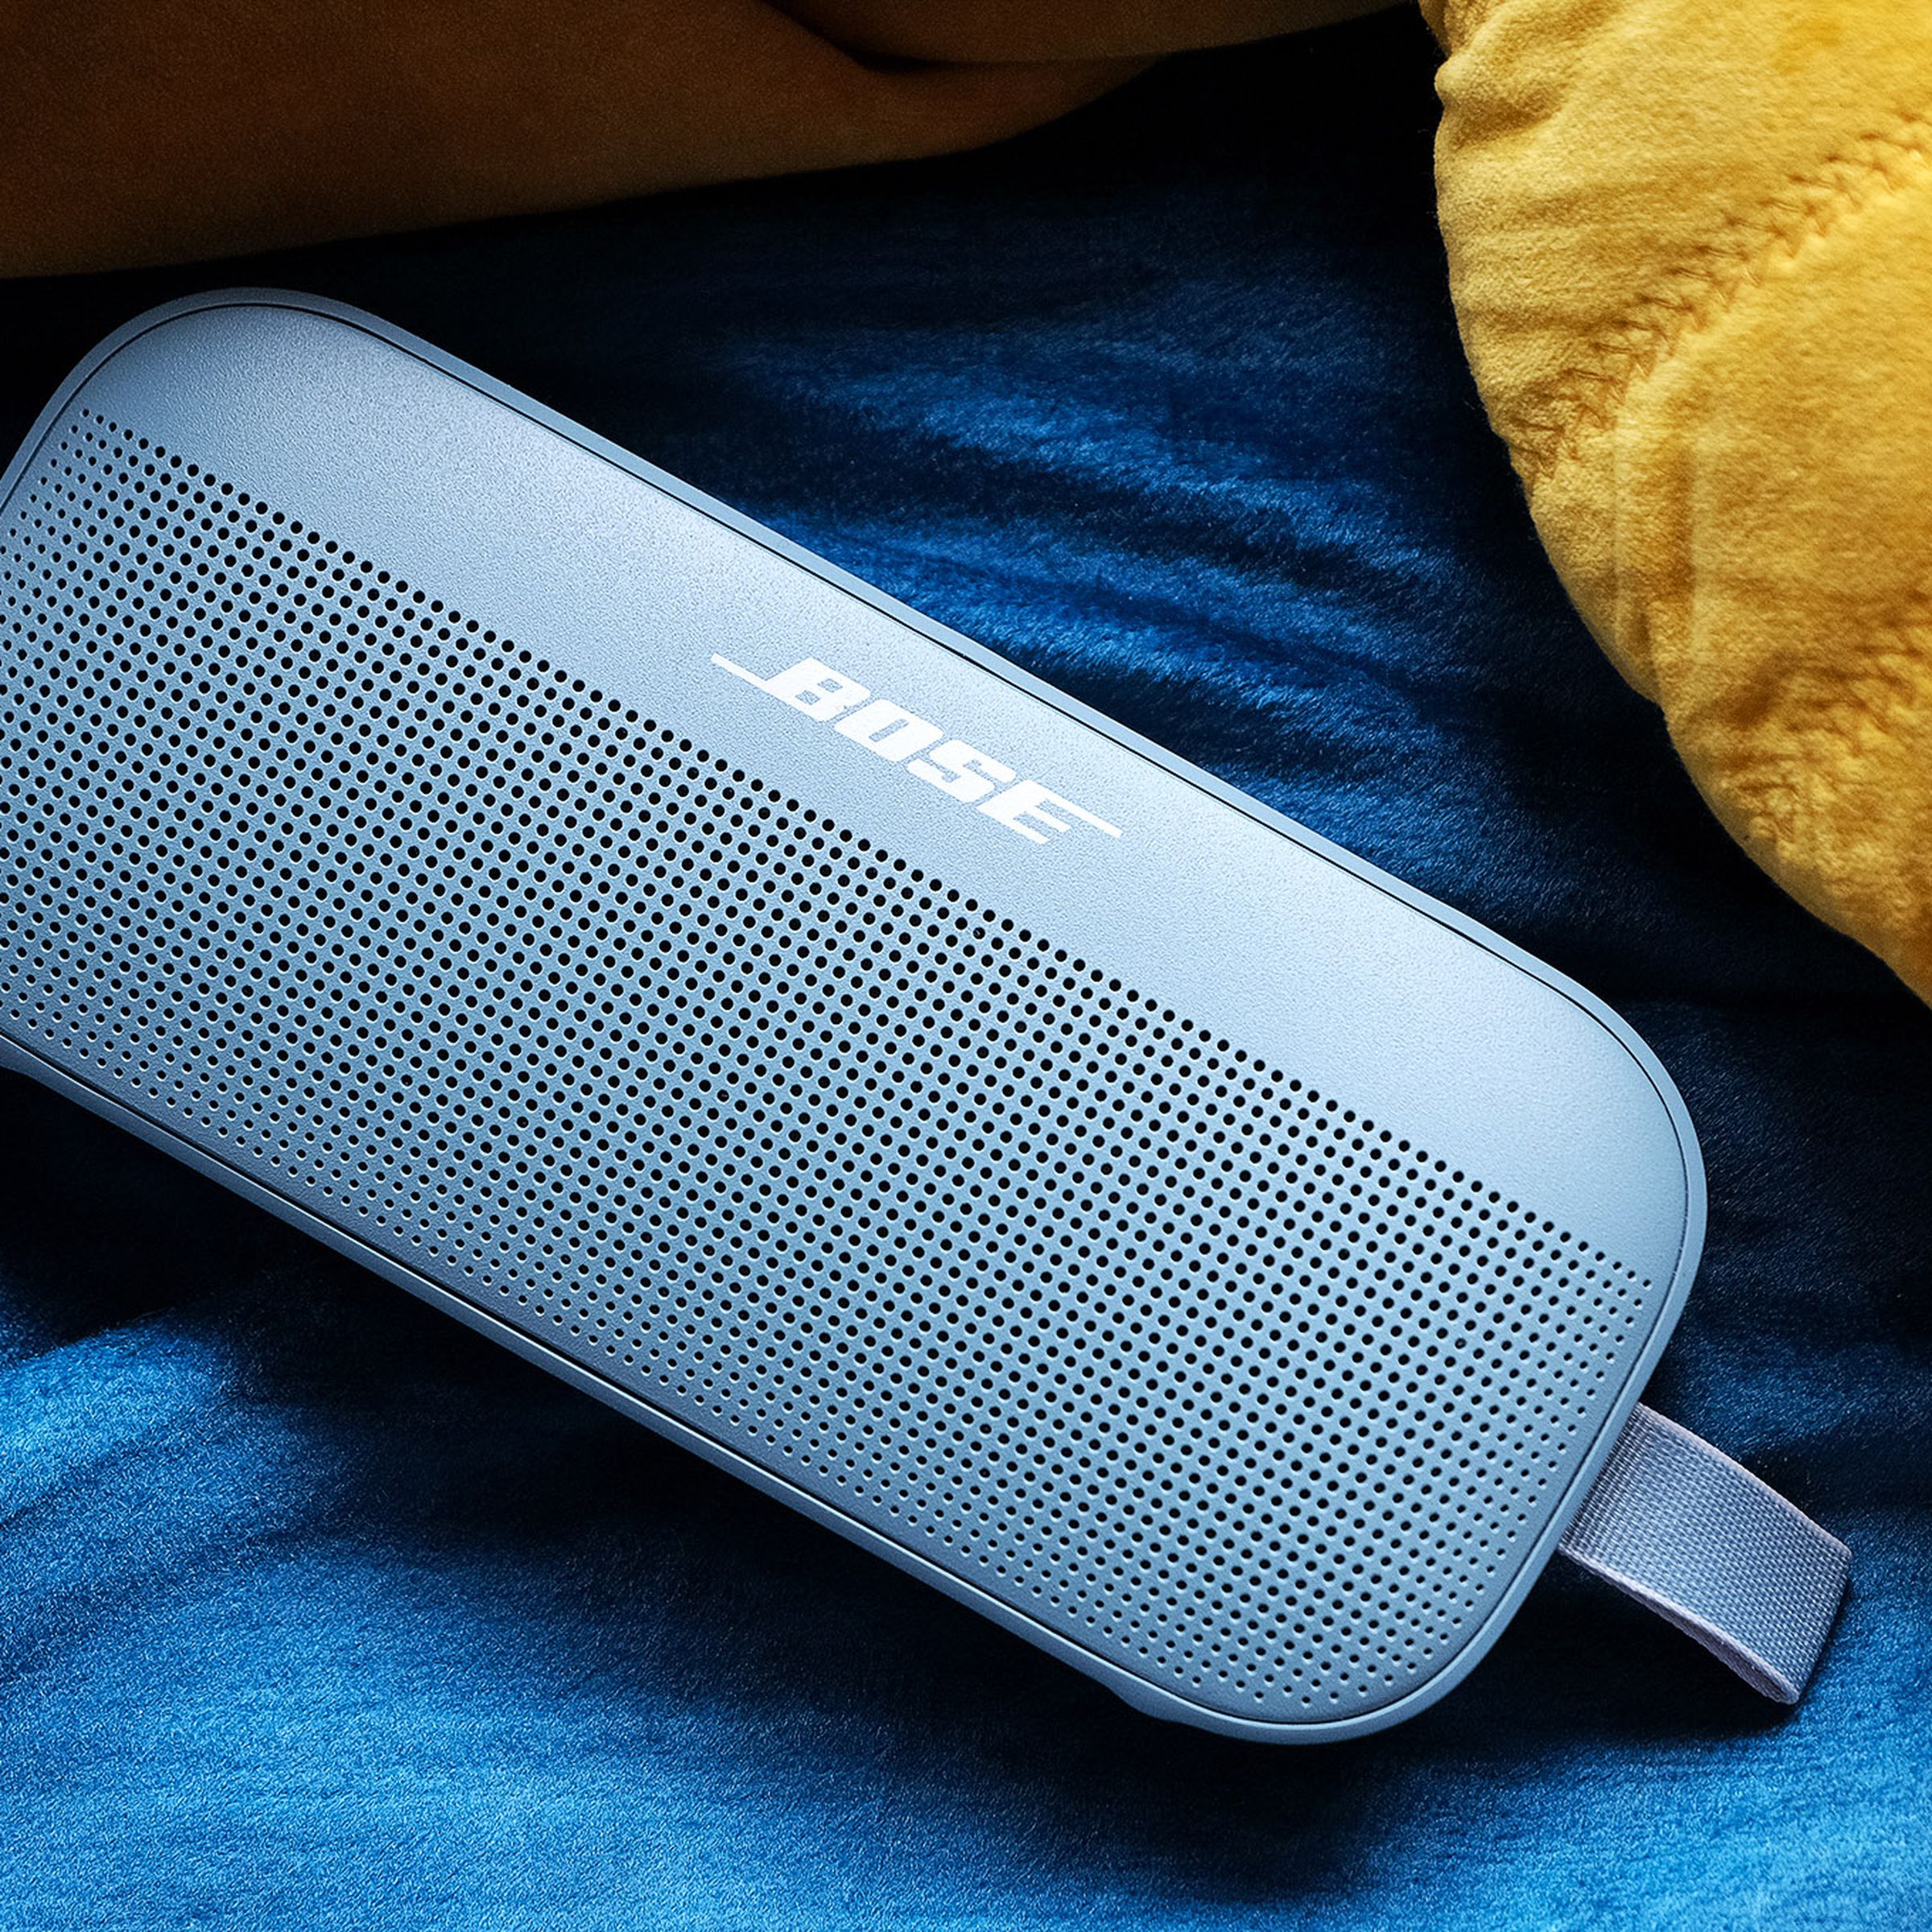 The Bose SoundLink Flex, resting on a blanket.